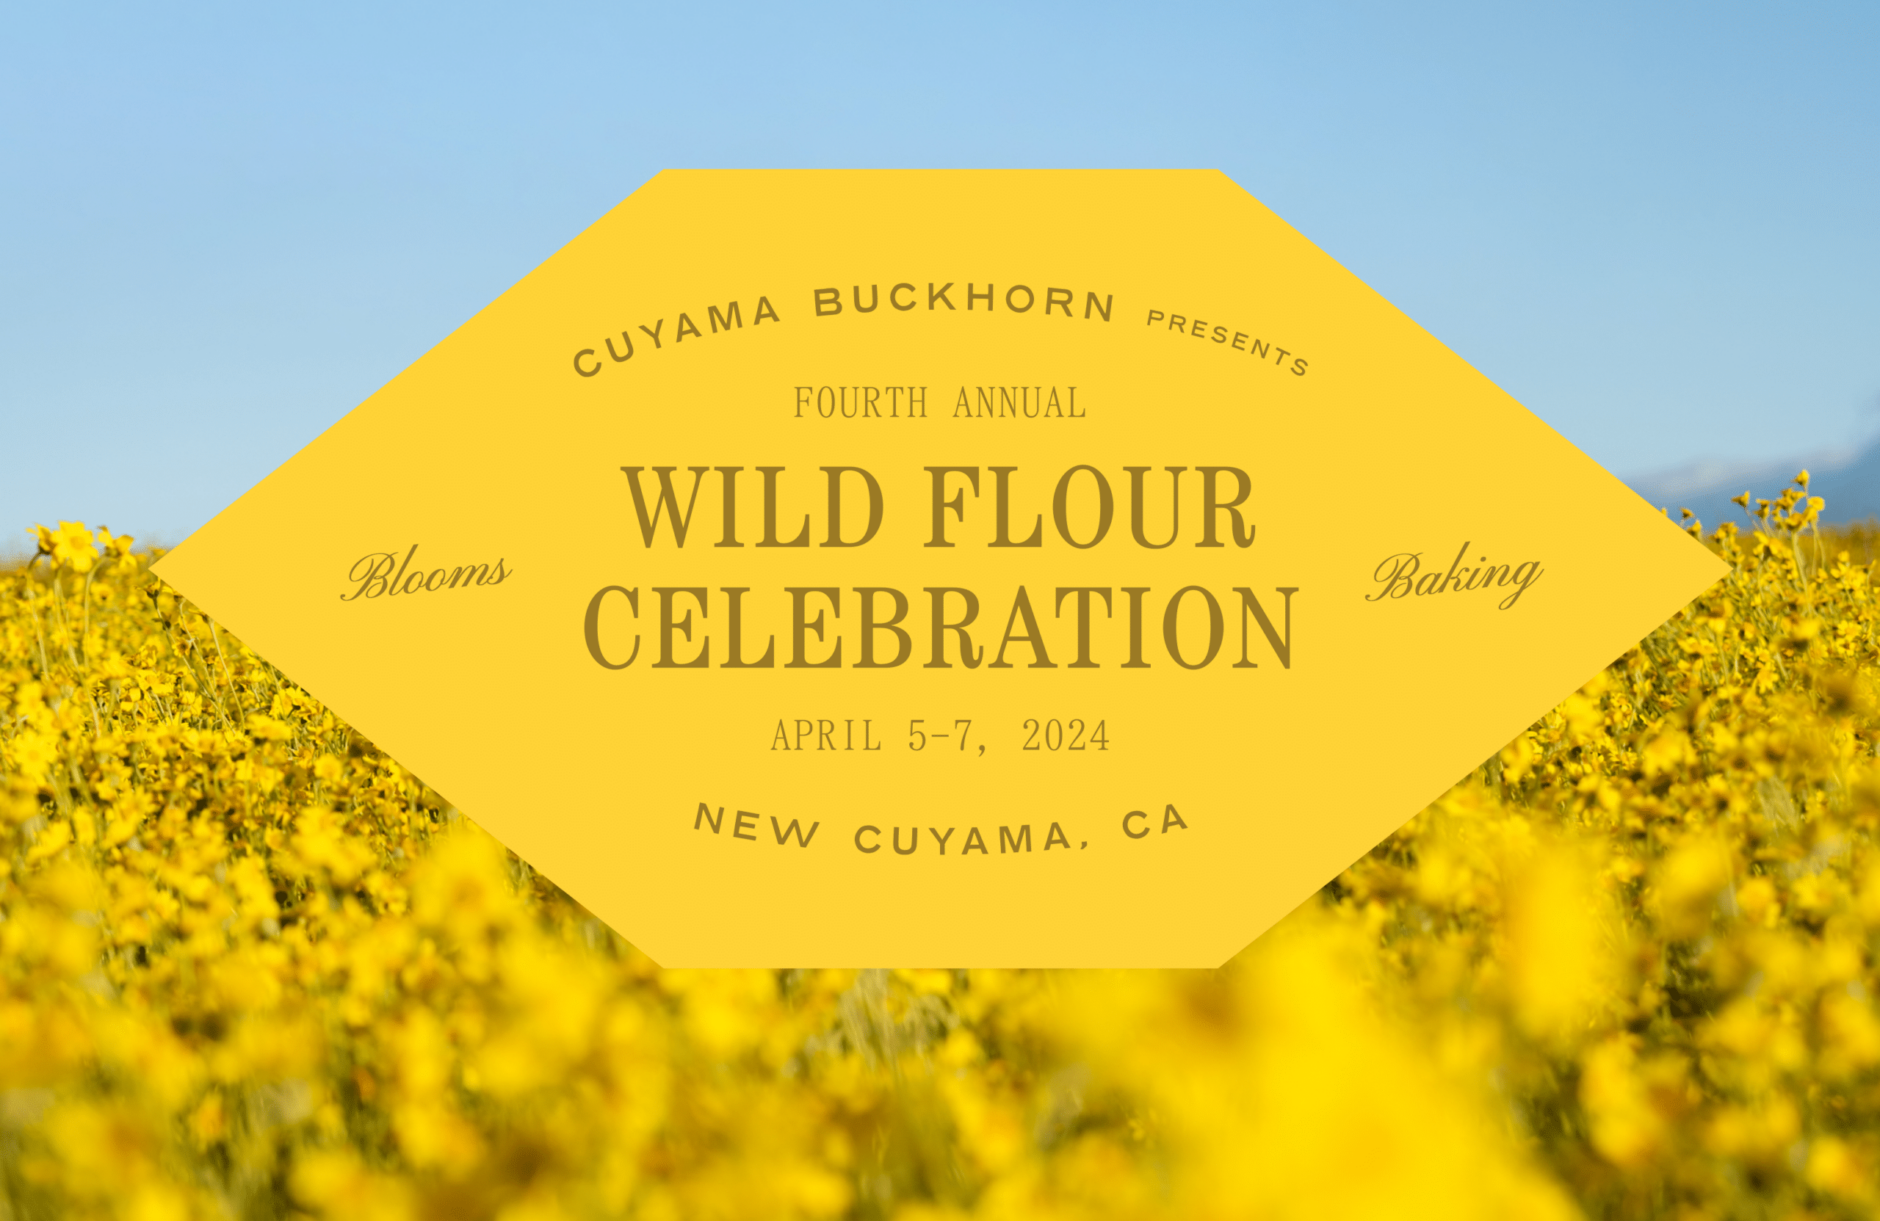 Wild Flour Celebration, Cuyama Buckhorn